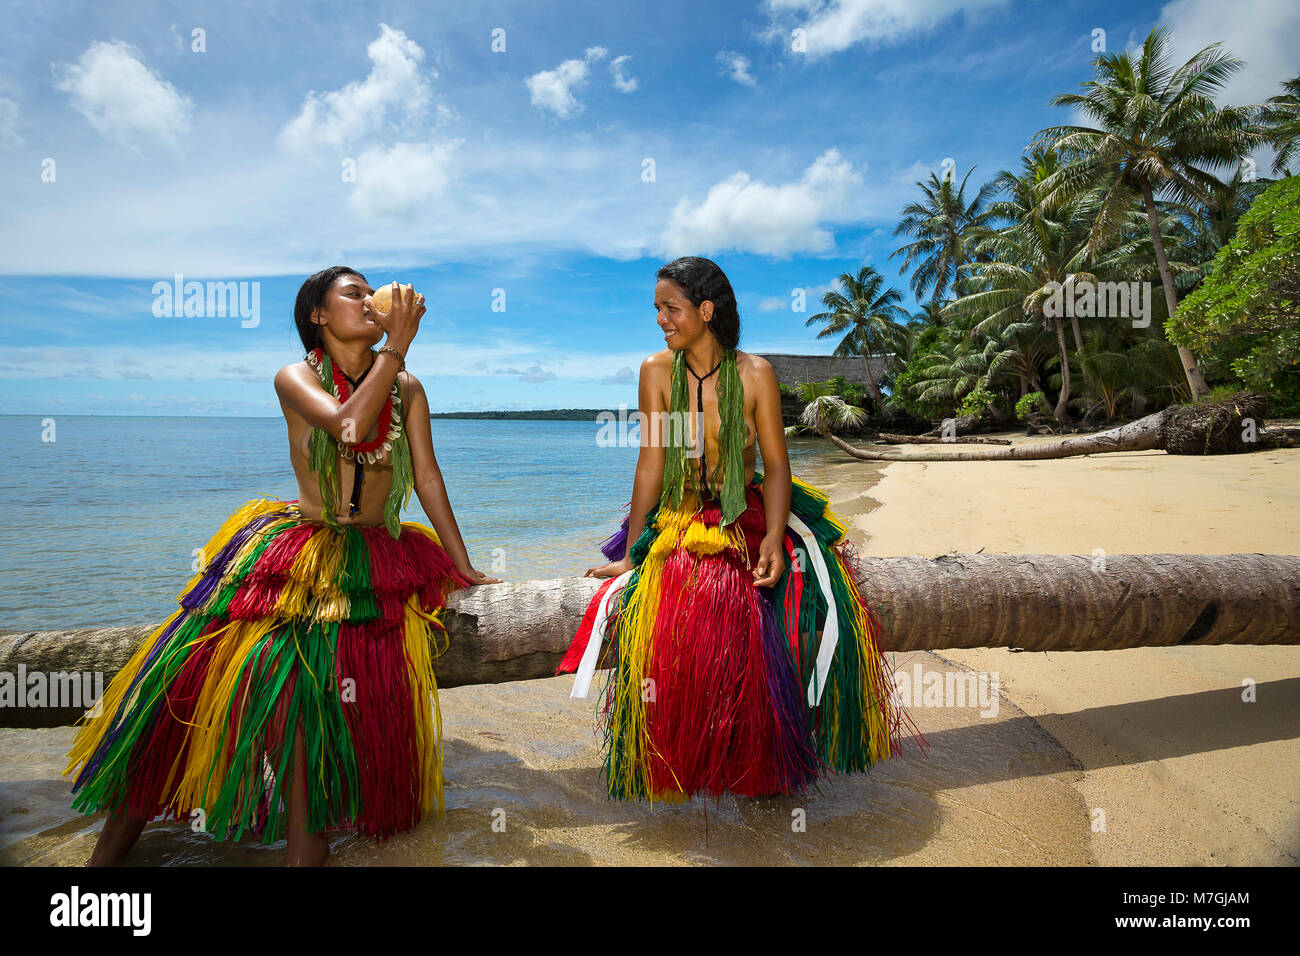 Estas dos niñas (MR) están en los tradicionales trajes para ceremonias culturales en la isla de Yap, Micronesia. Foto de stock